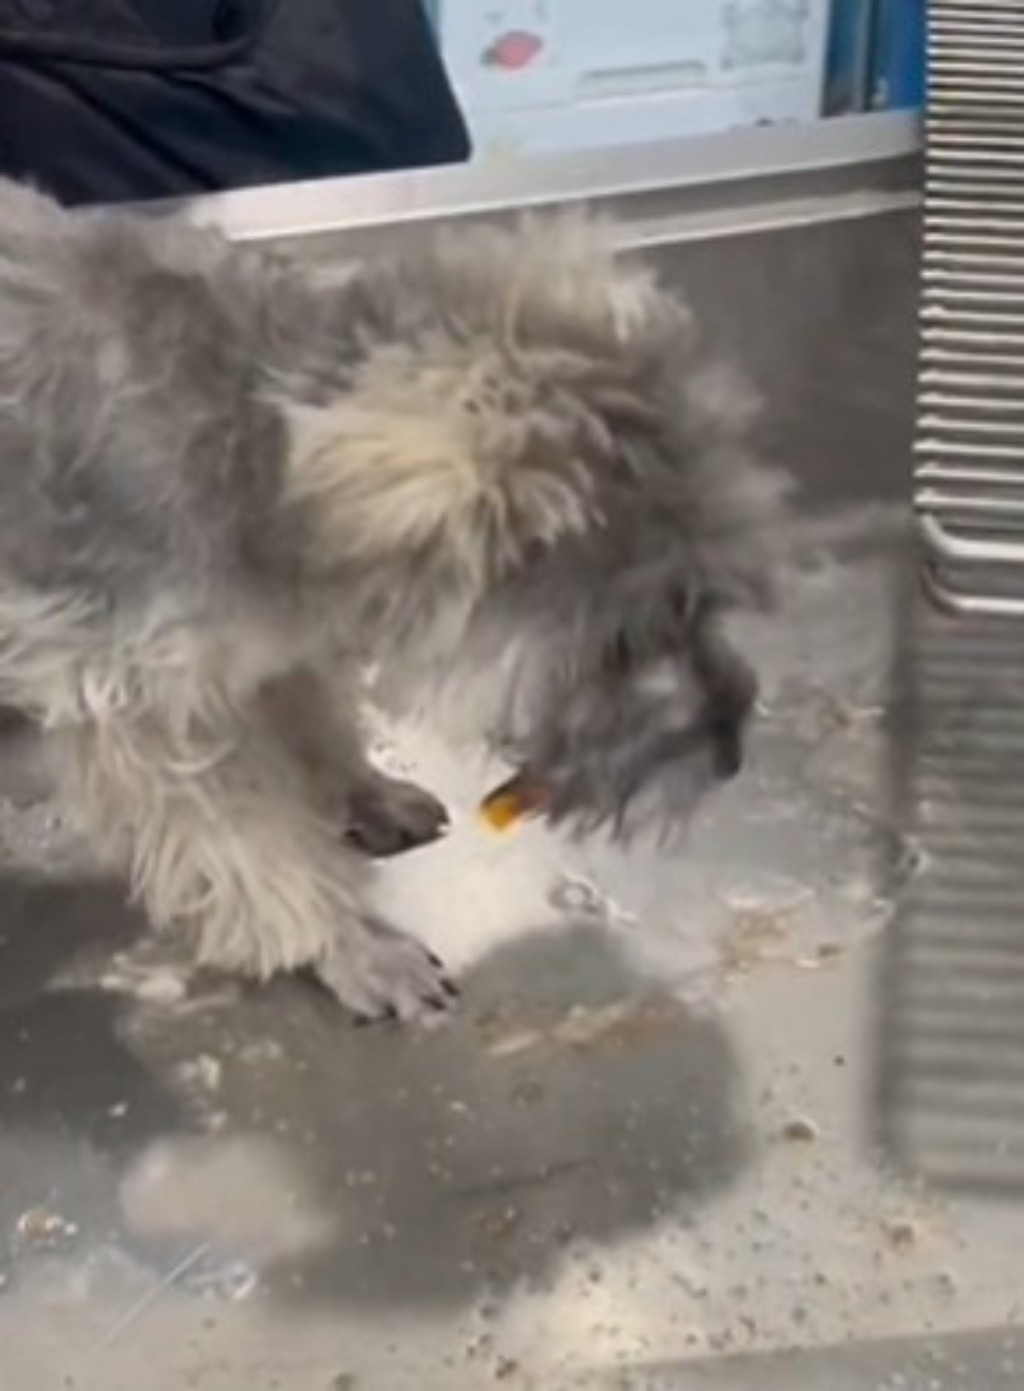 小狗被送到醫院進行催吐和洗胃。 影片截圖